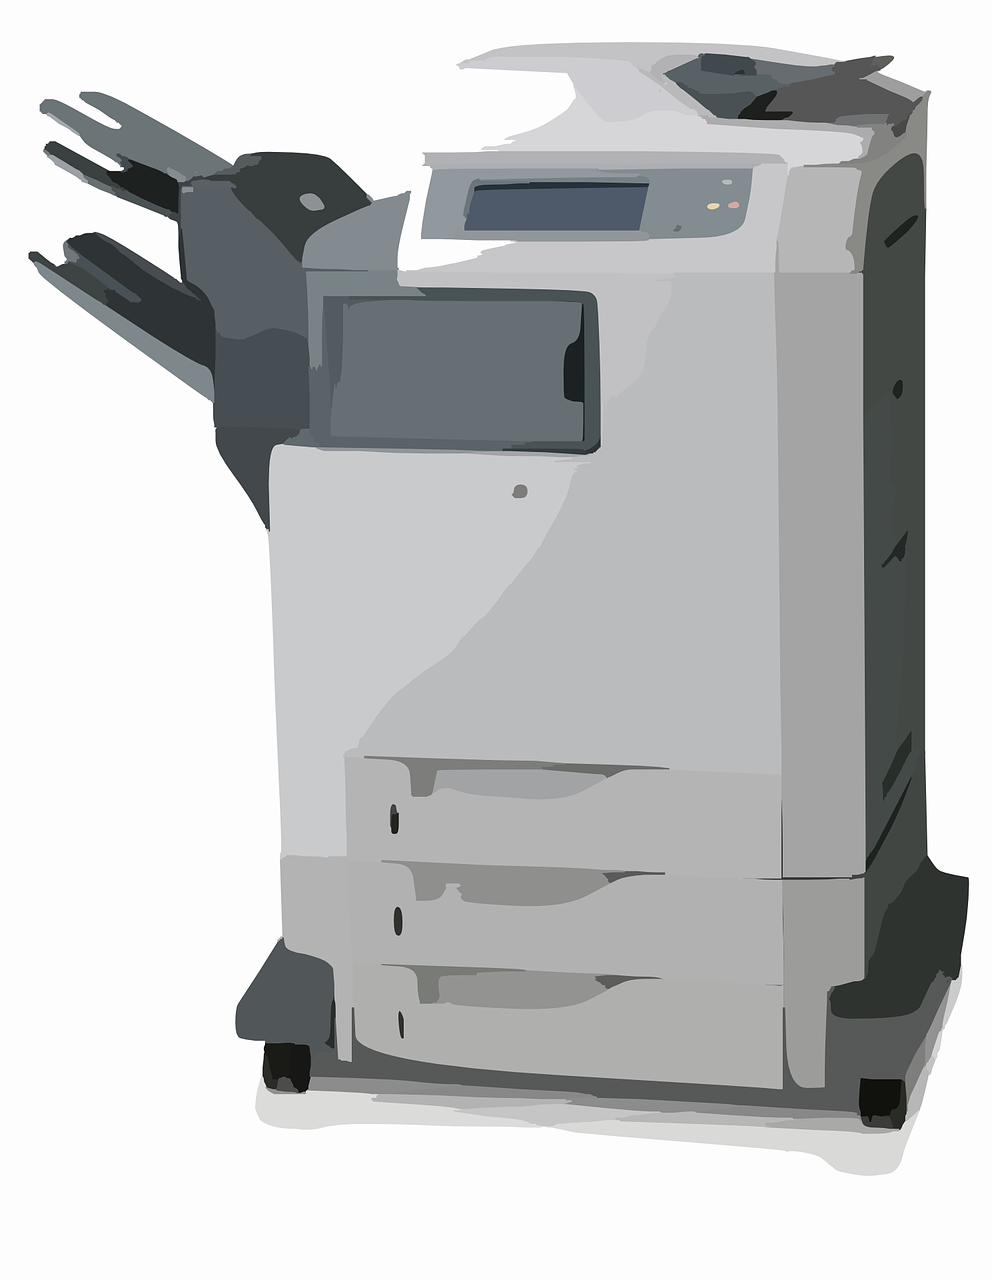 Ilustrasi mesin fotokopi